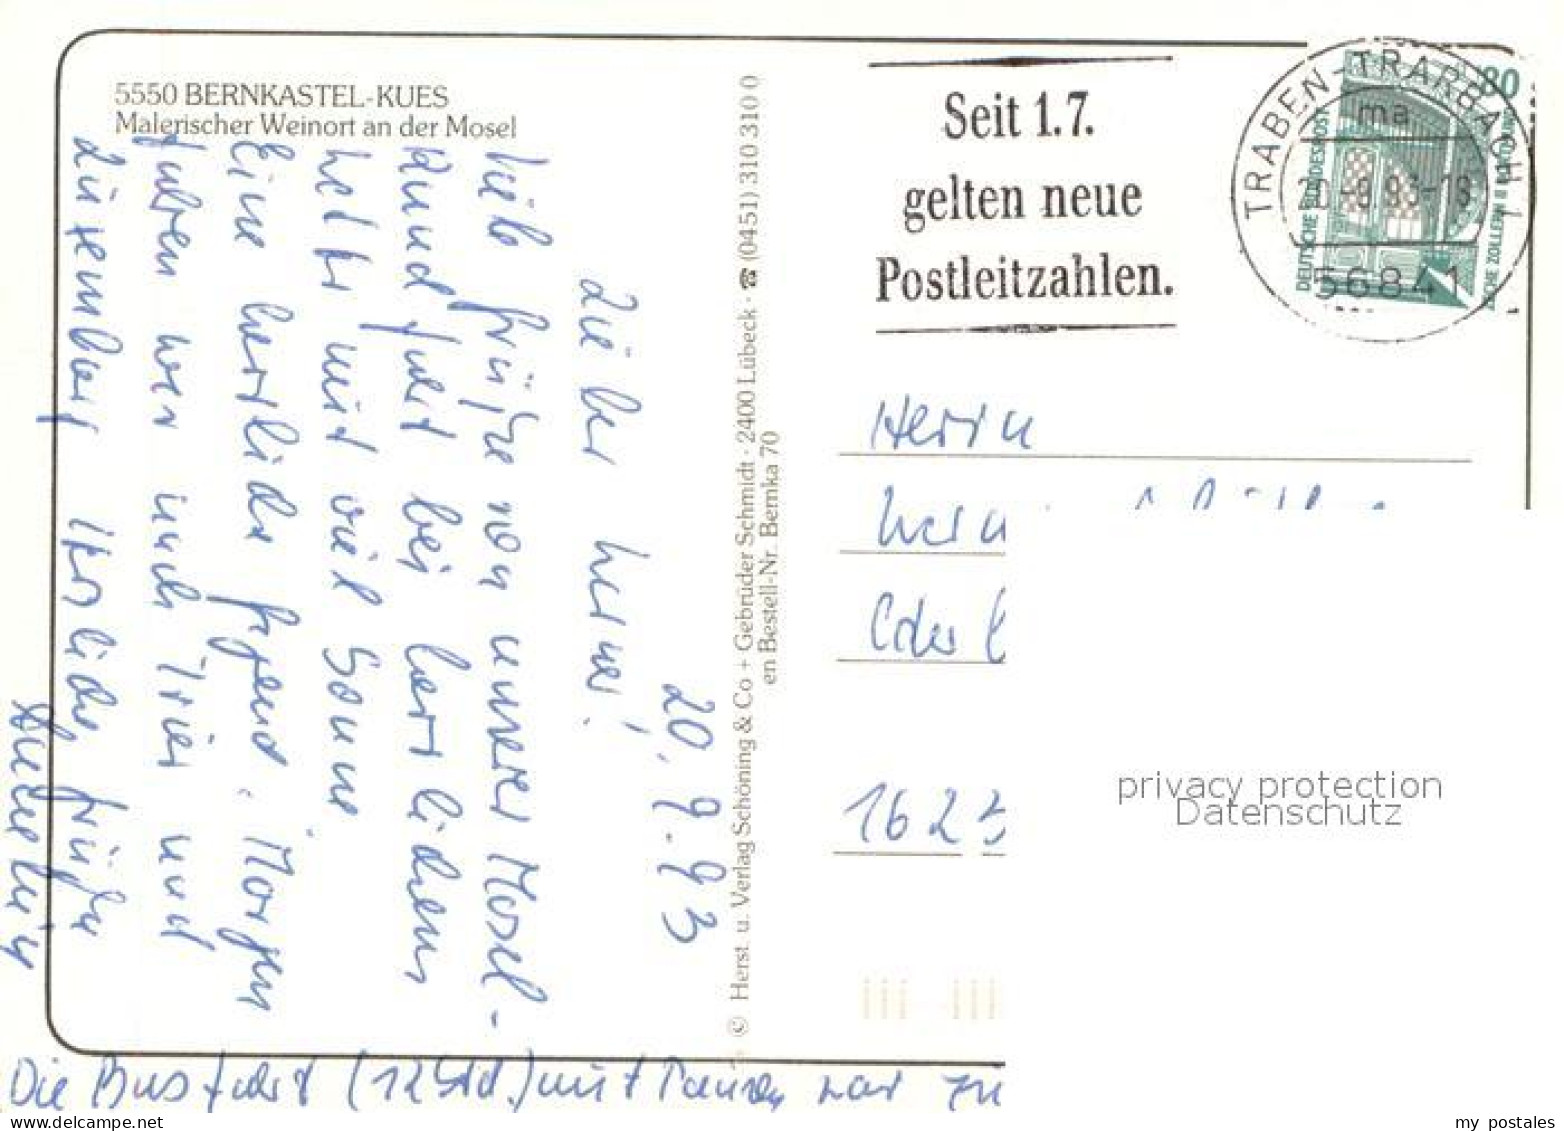 73657133 Bernkastel-Kues Malerischer Weinort An Der Mosel Bernkastel-Kues - Bernkastel-Kues